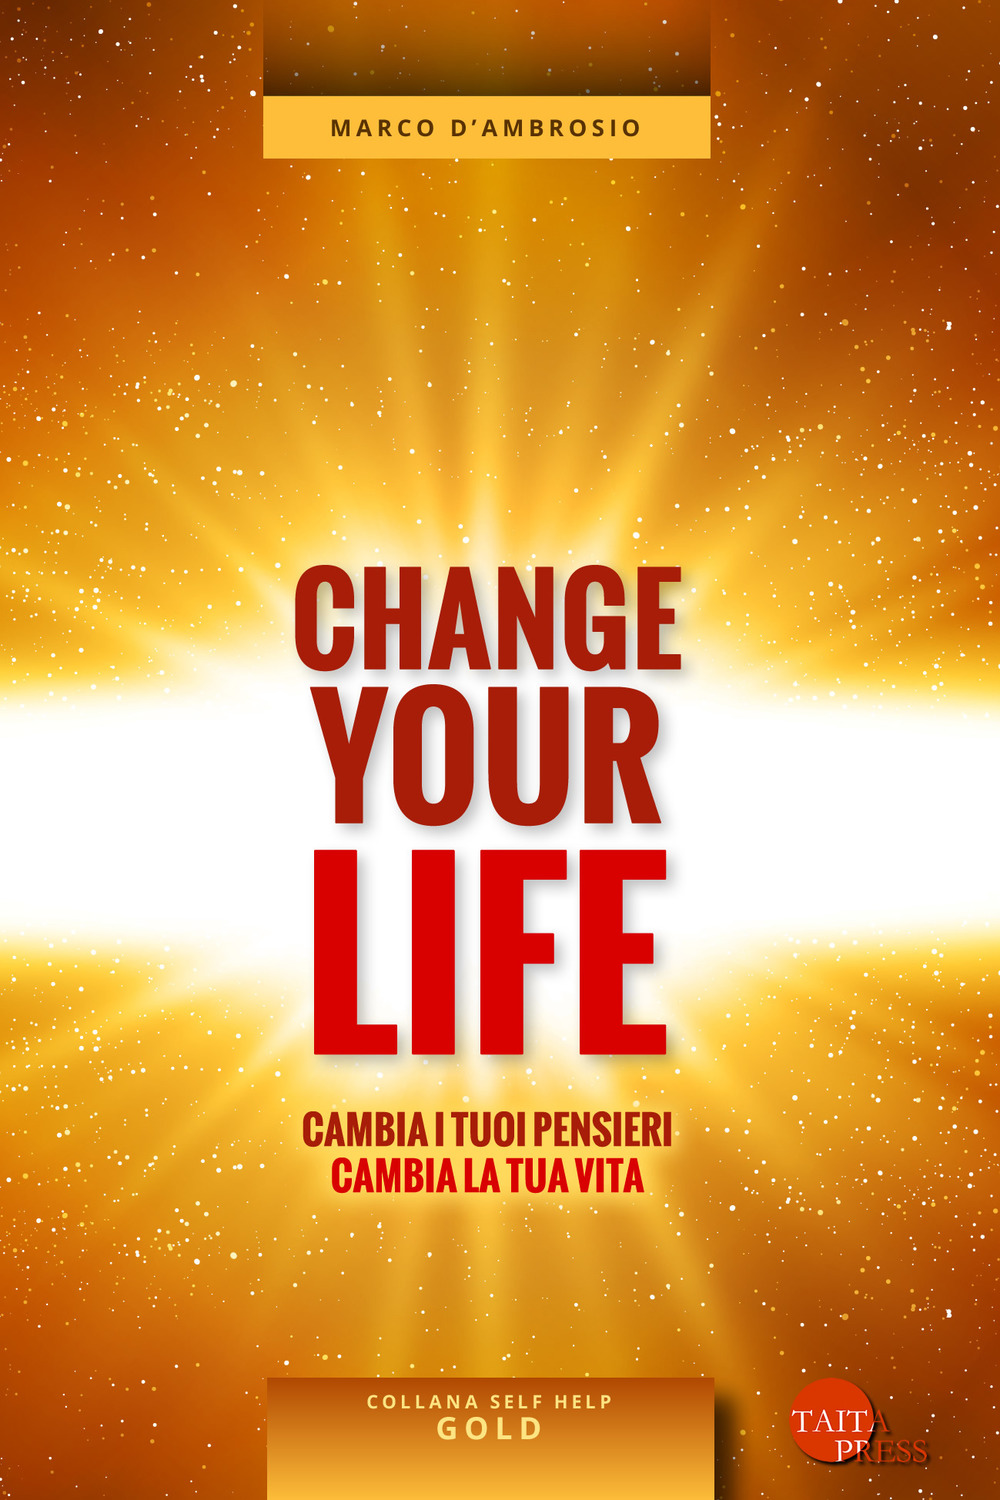 Change your life. Cambia i tuoi pensieri, cambia la tua vita